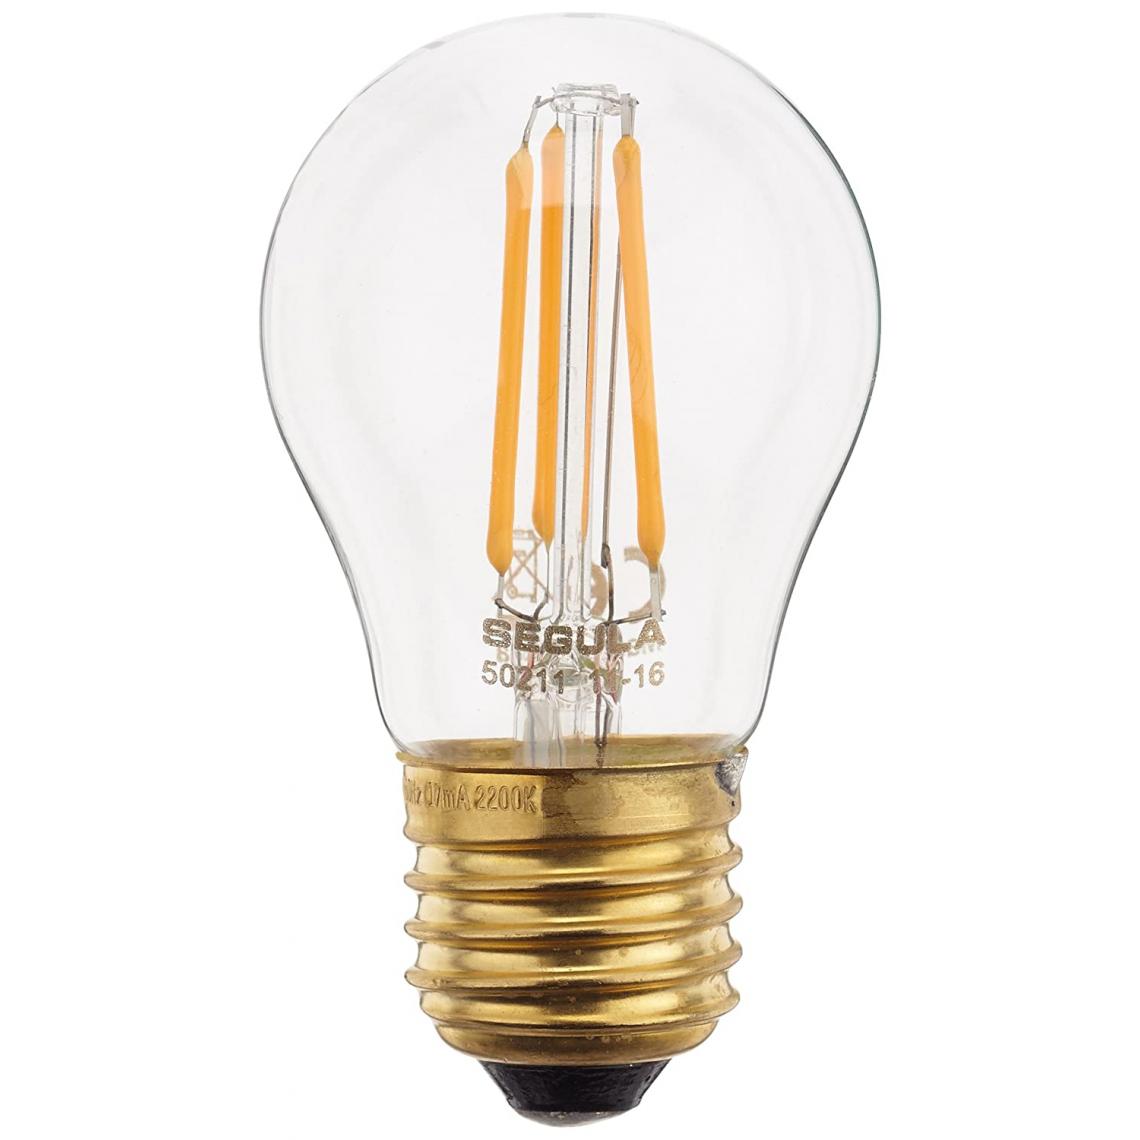 Inconnu - Segula LED EEC A+ (A++ - E) E27 forme standard 3.5 W = 20 W blanc chaud (Ø x L) 47 mm x 88 mm à filament, à intensité variable 1 pc(s) - Ampoules LED